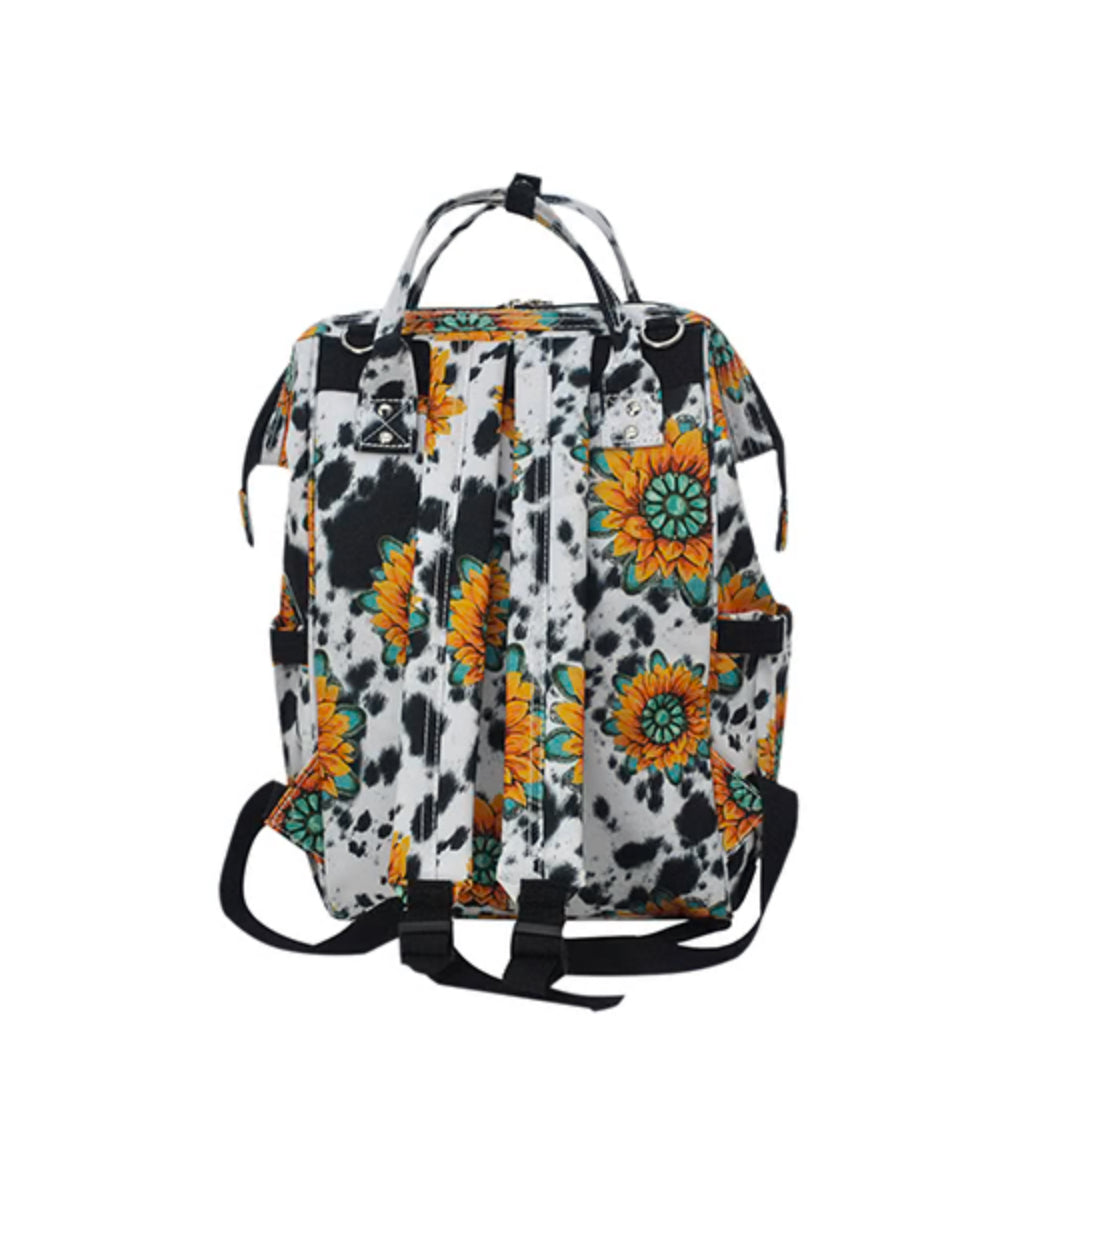 Sunflower Farm Travel/Diaper Bag